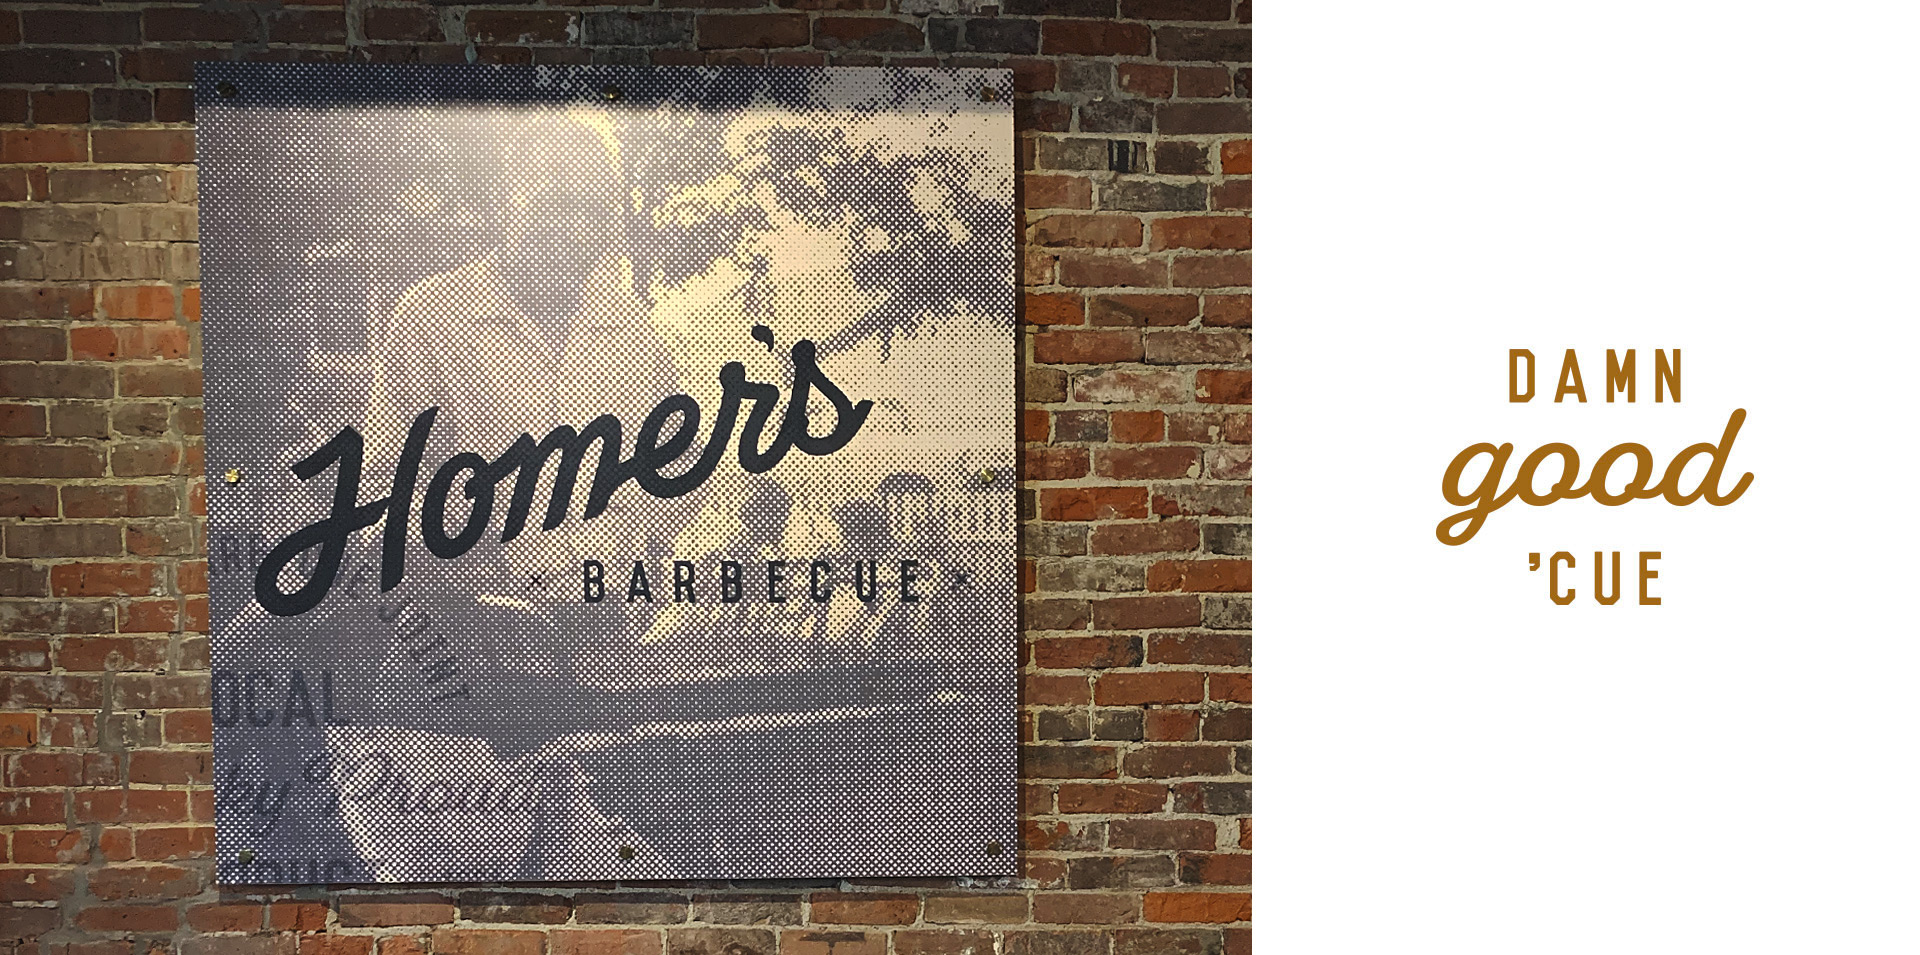 Homer's Barbecue | Restaurant Branding